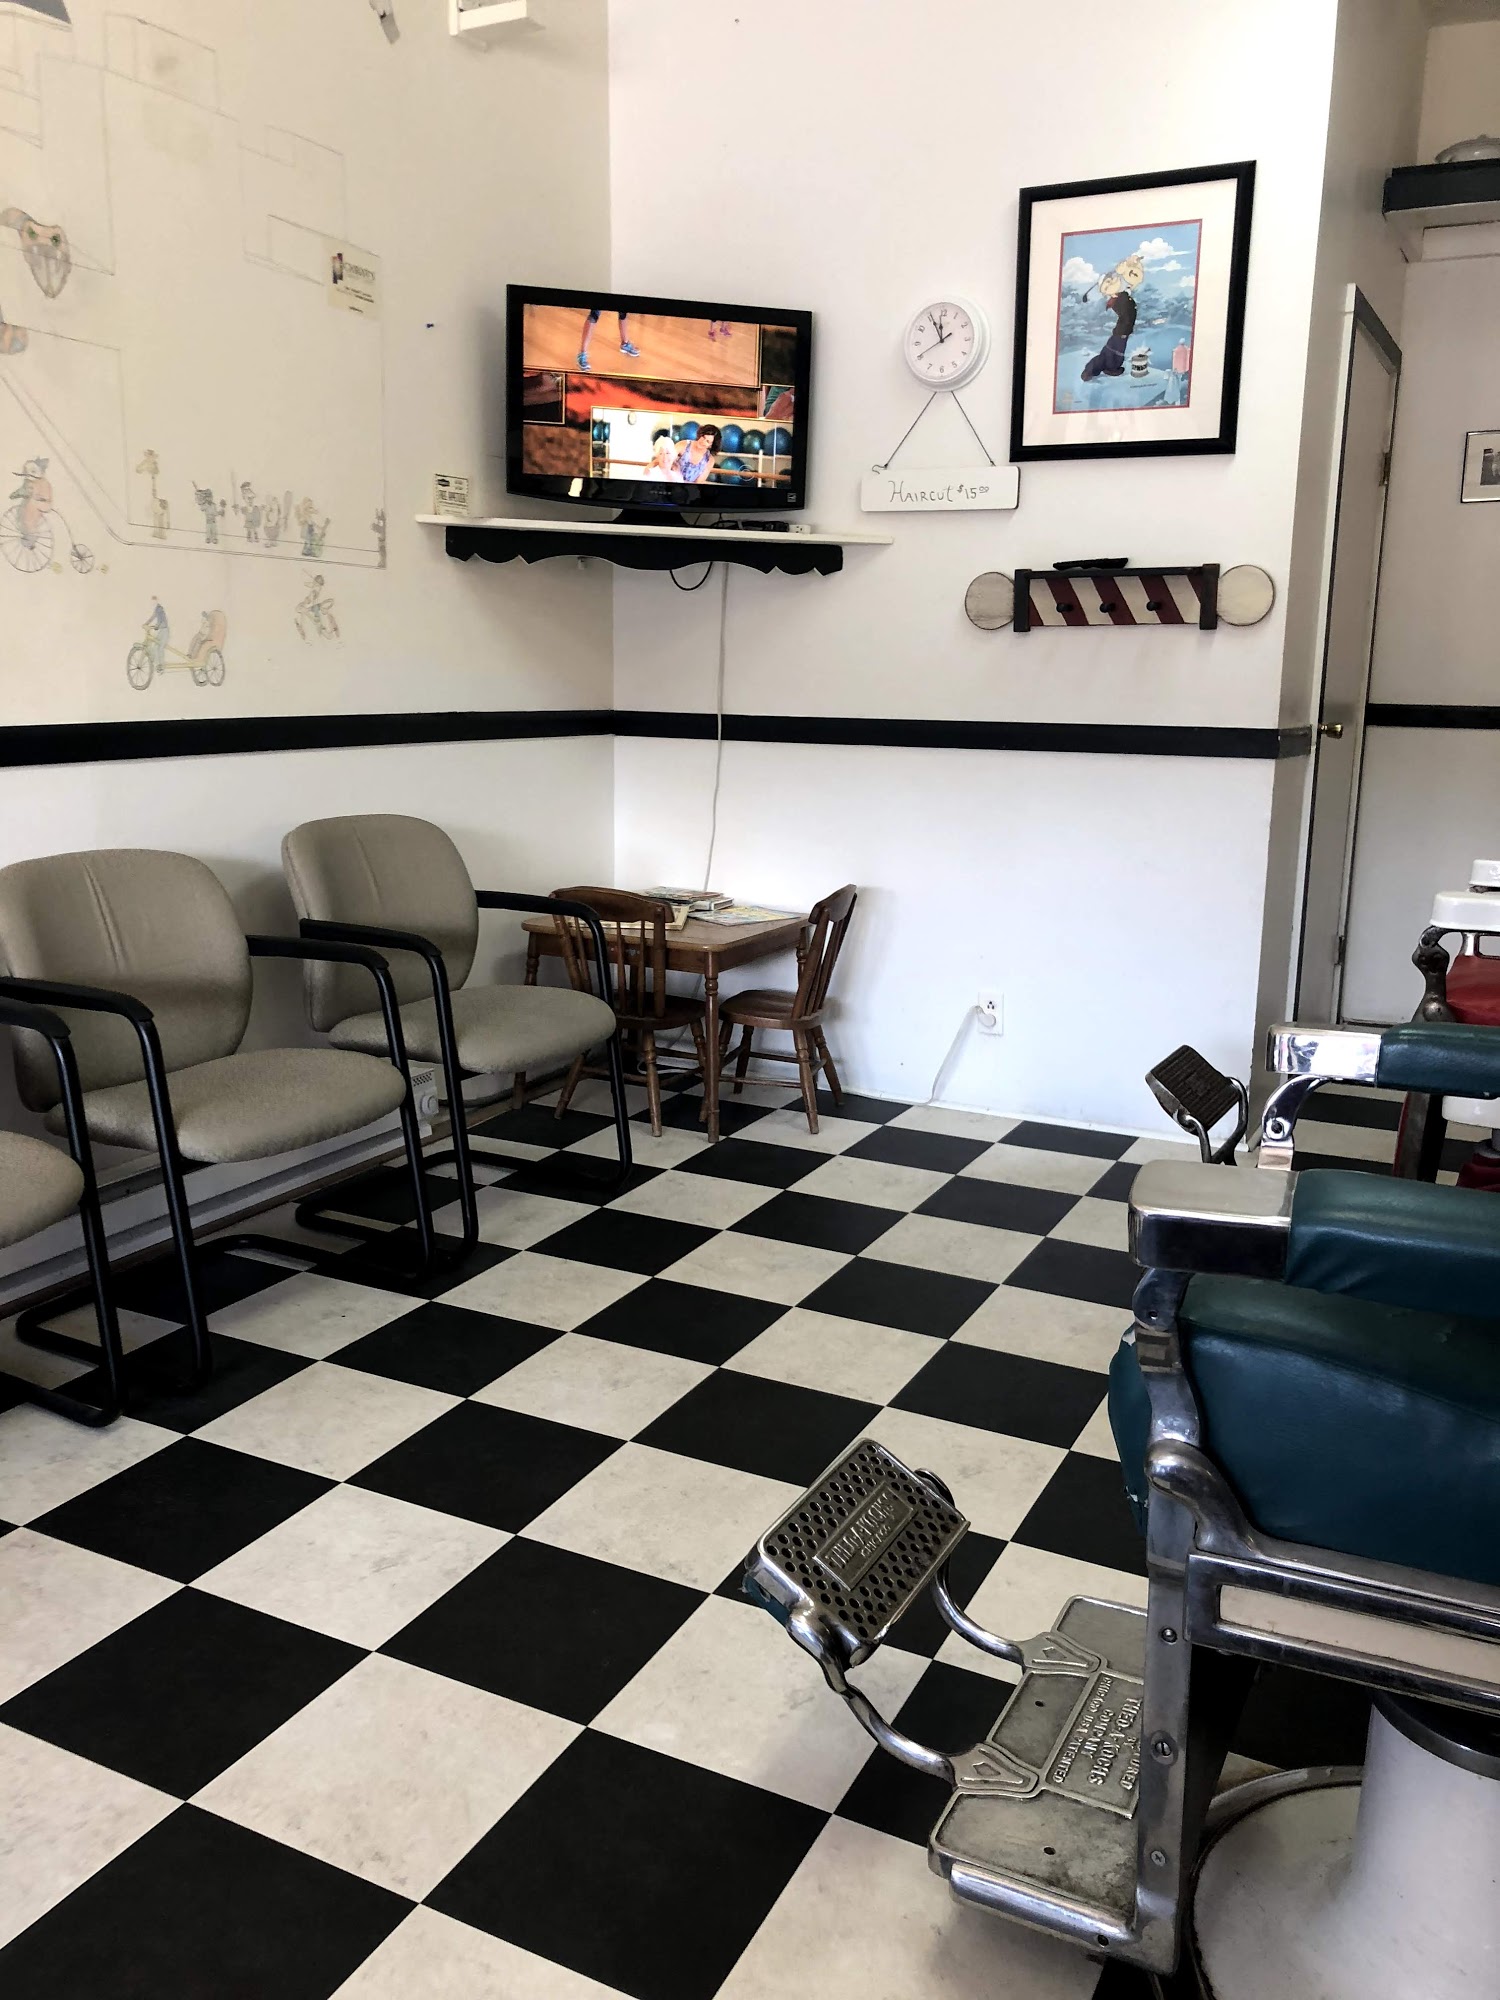 Fishers Barber Shop